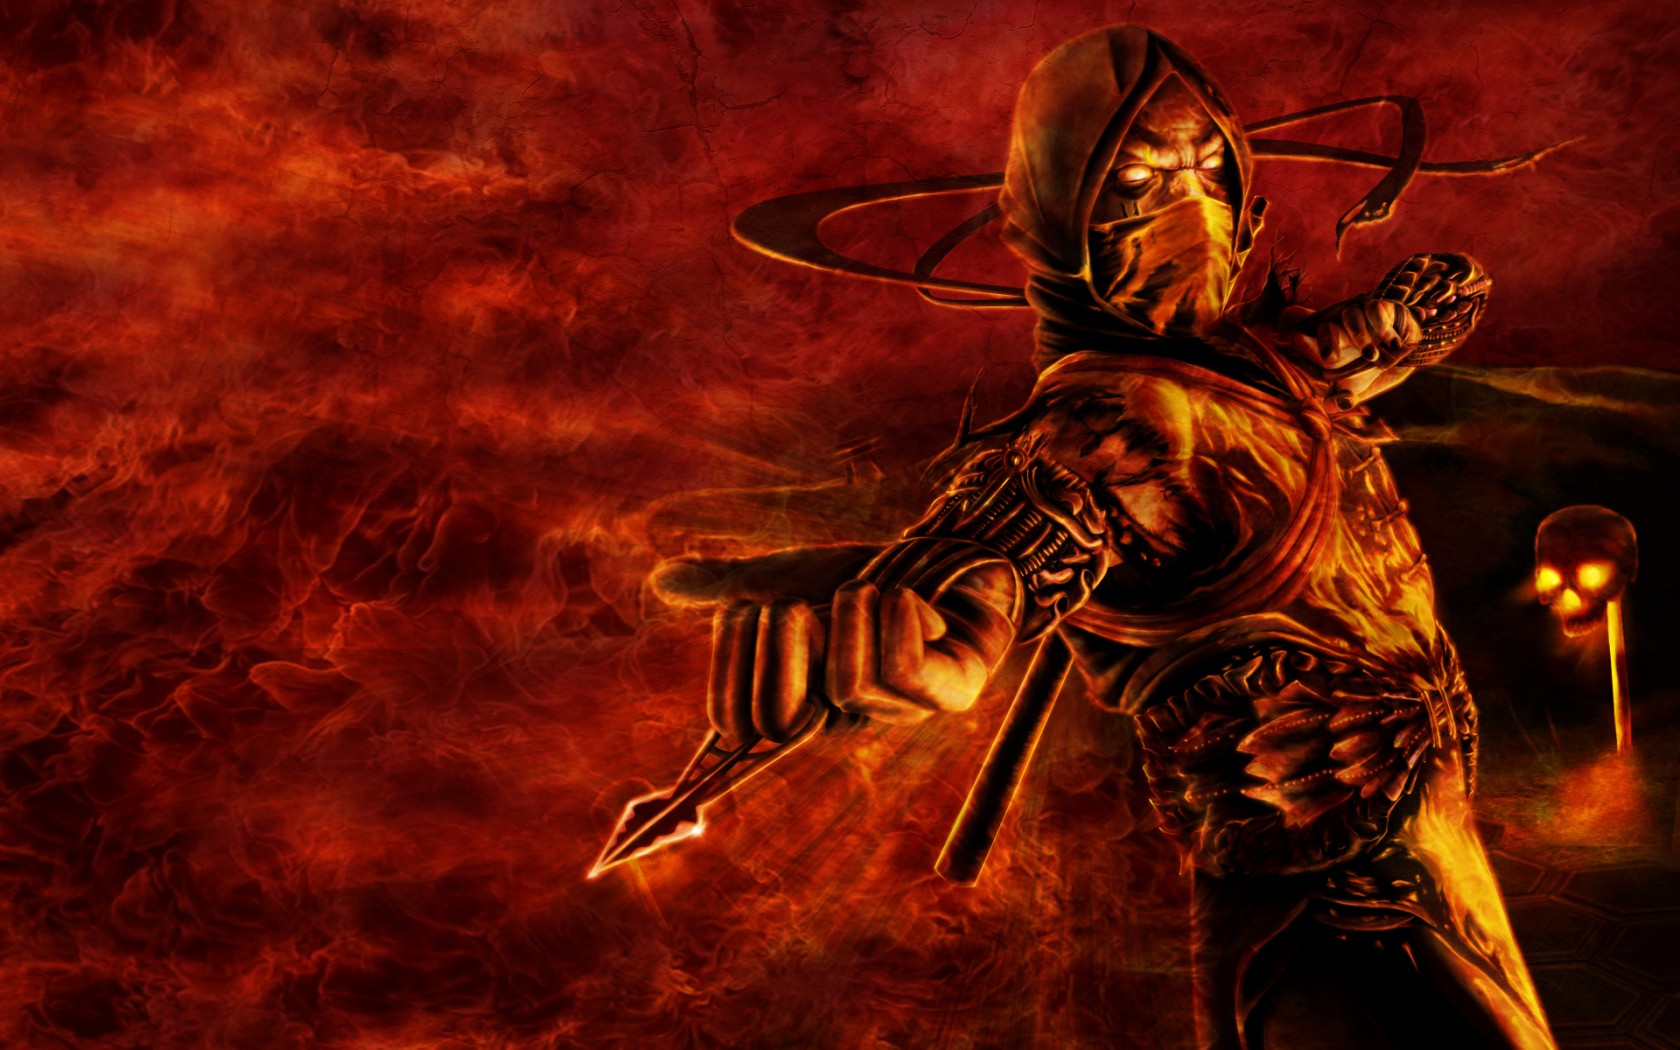 Mortal Kombat Scorpion Wallpapers HD - WallpaperSafari